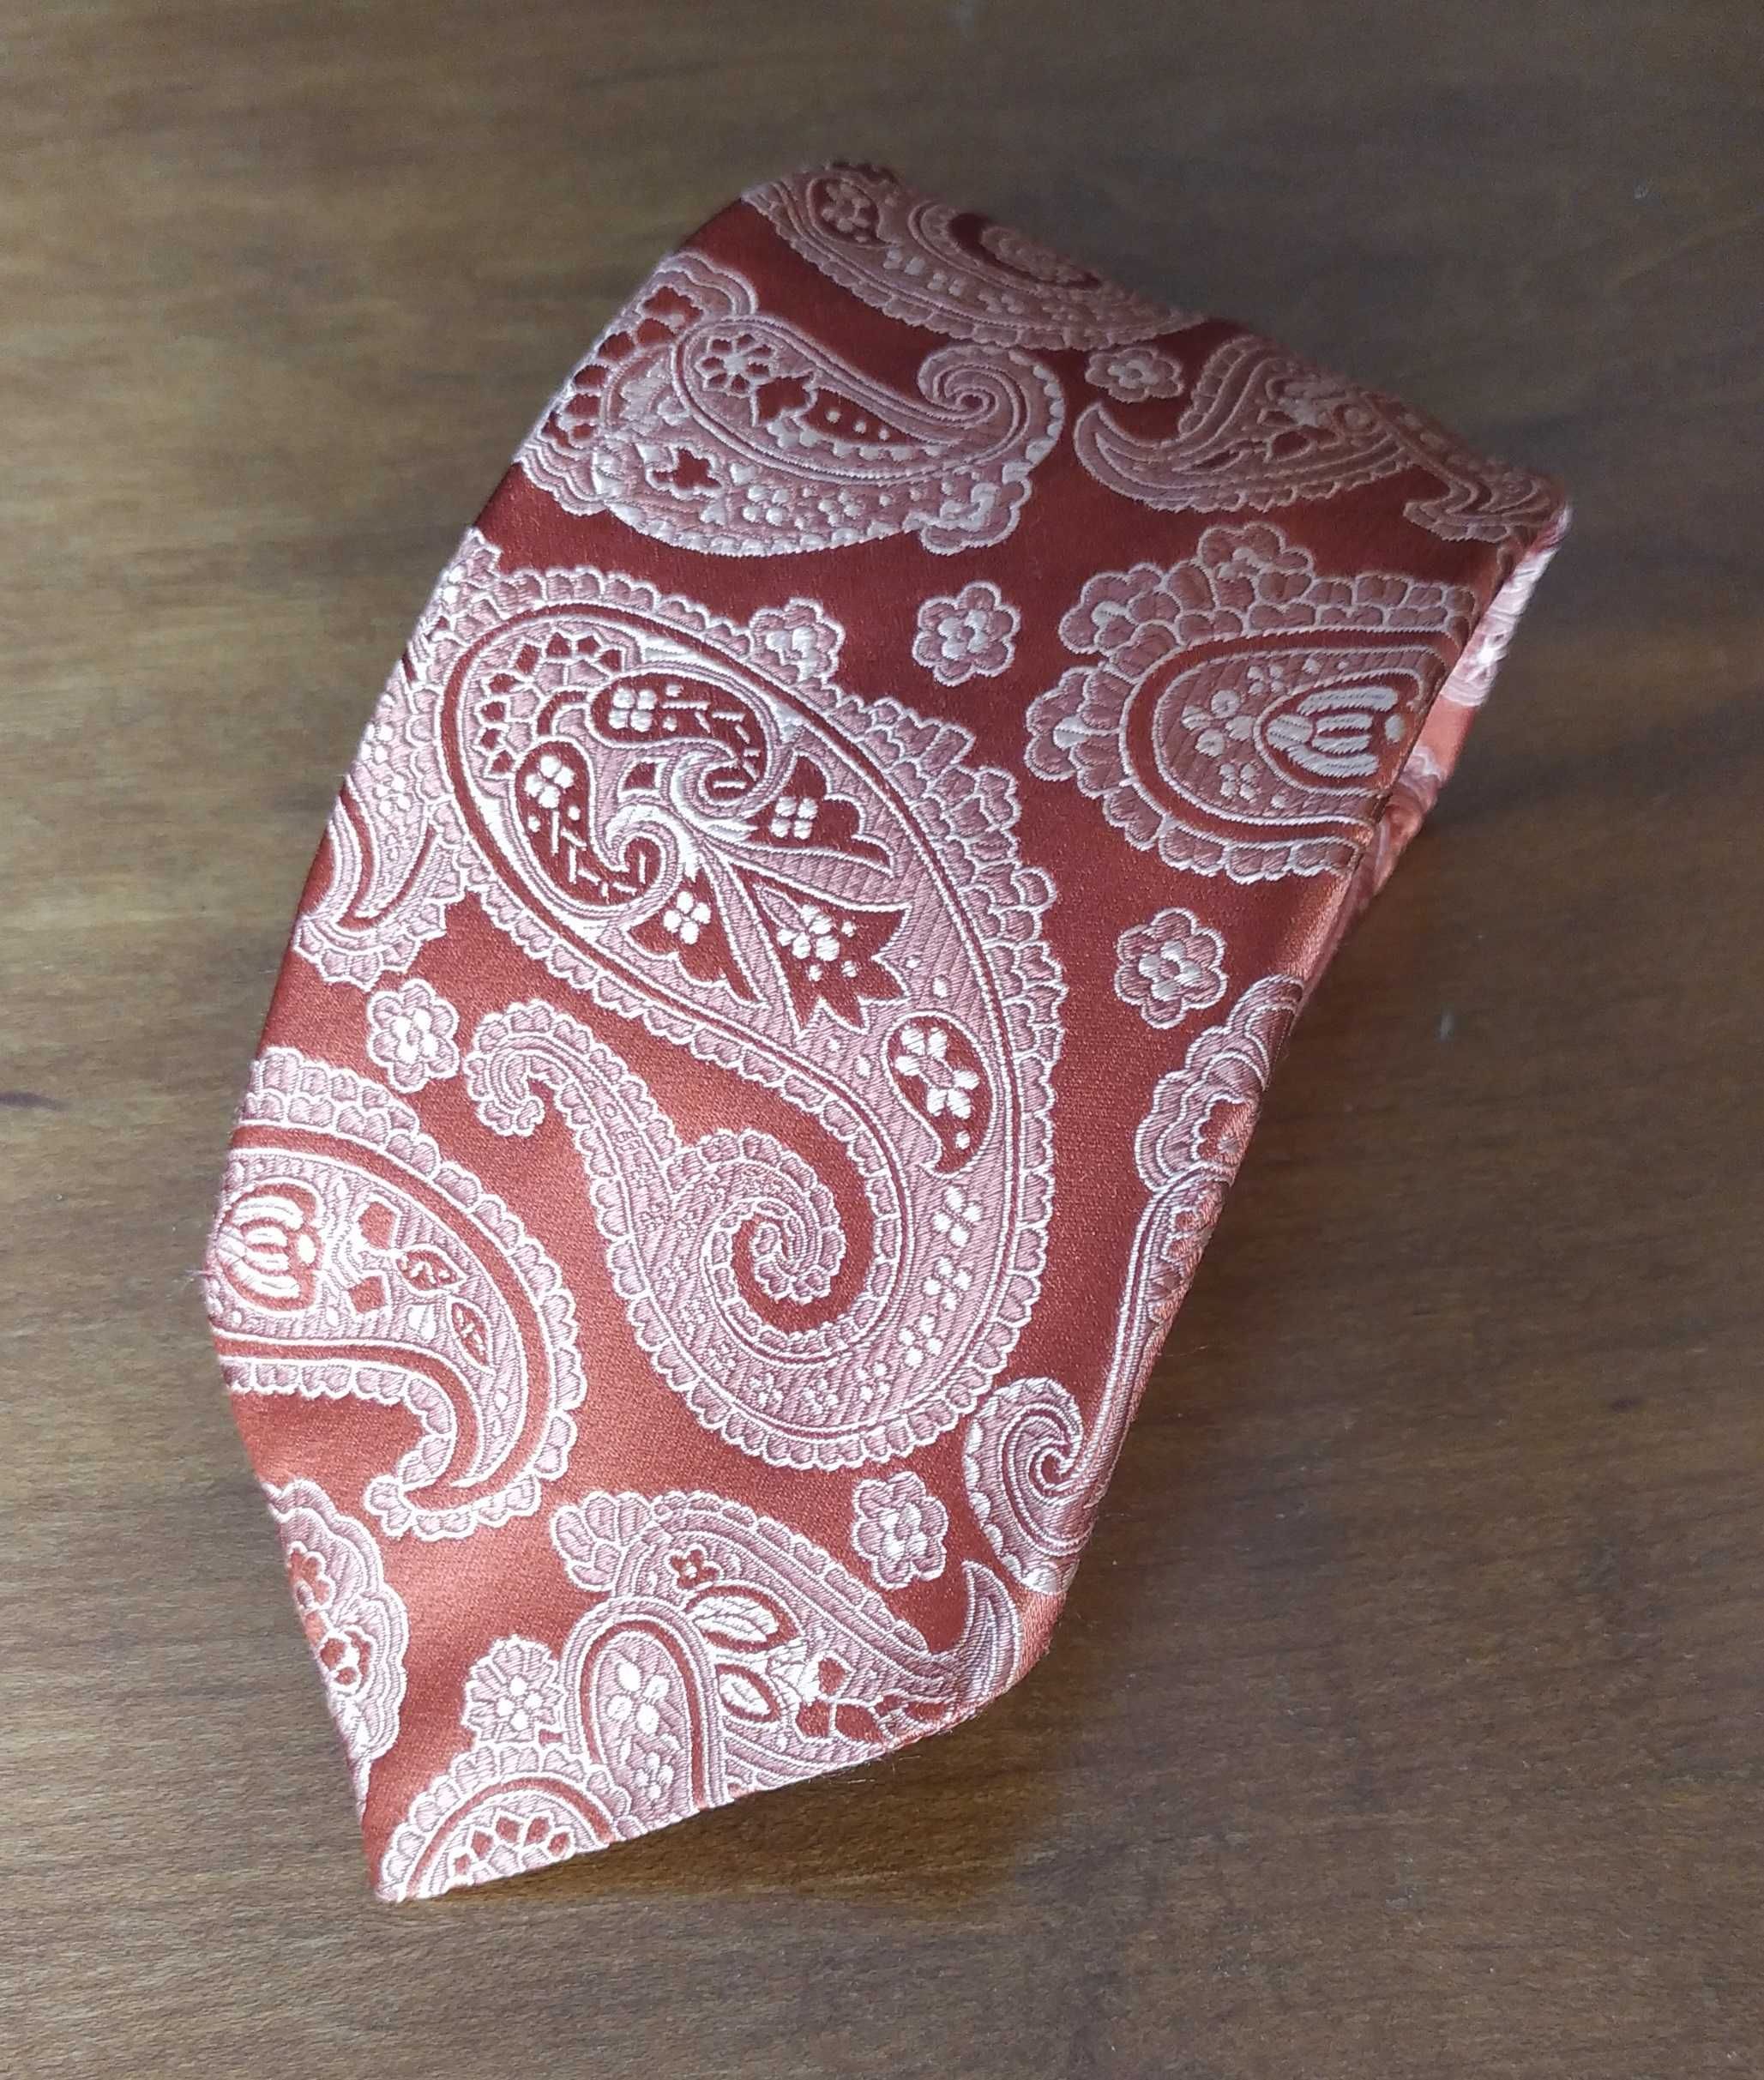 Krawat jedwabny włoski łososiowy w kremowe stylizowane wzory paisley